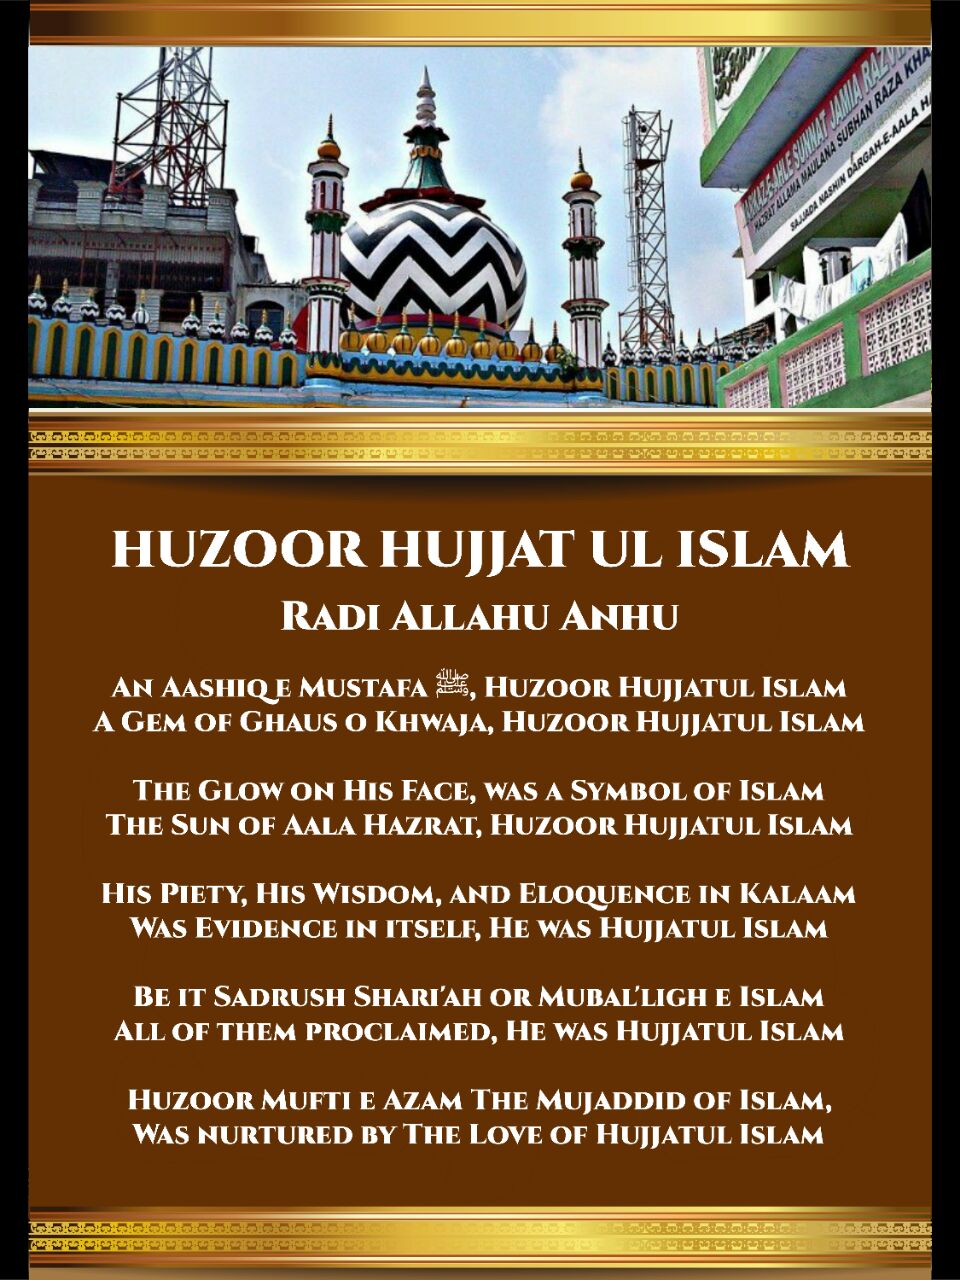 huzoor hujjatul islam part 1